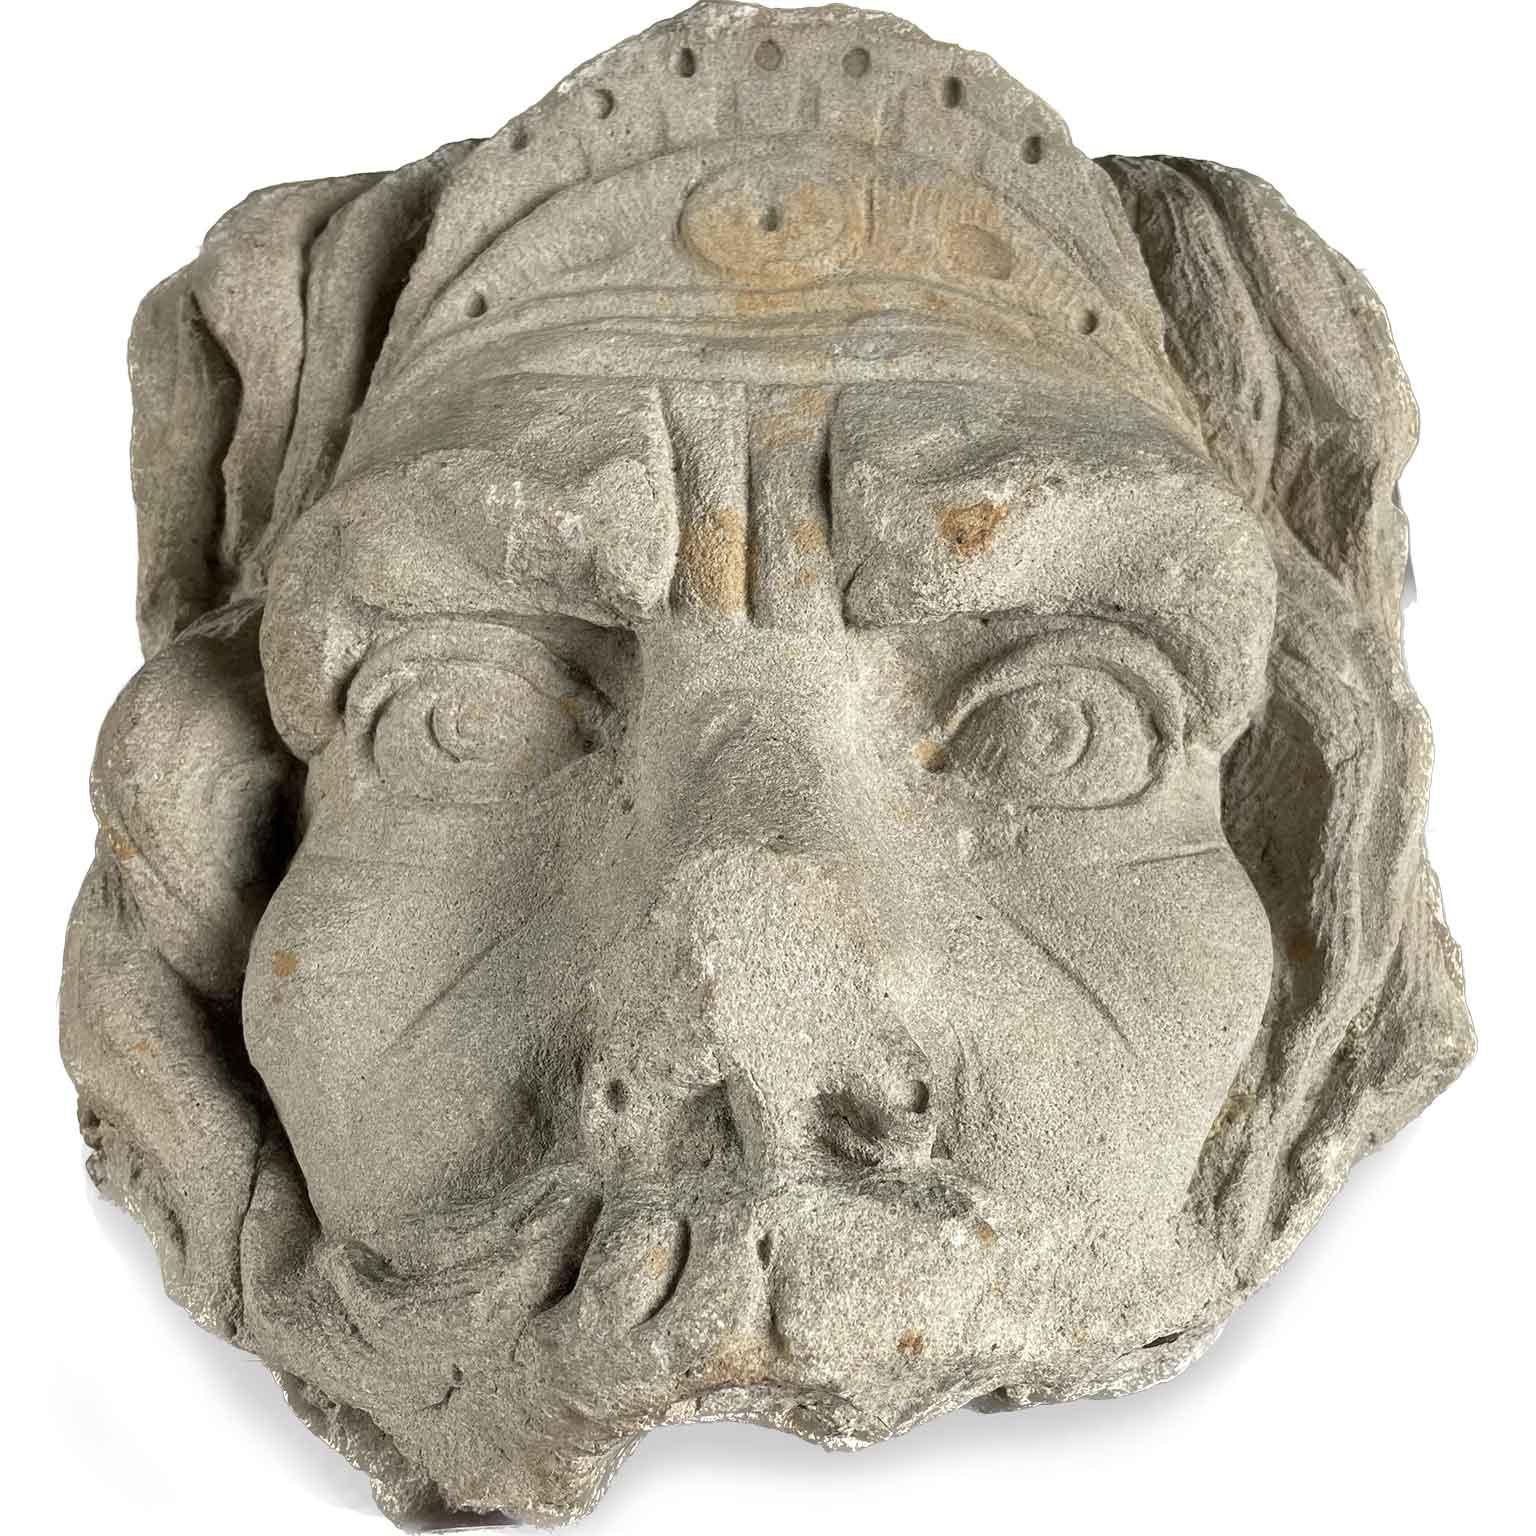 Ce masque de pierre antique a probablement été utilisé dans une fontaine. Il s'agit d'un objet antique italien très décoratif. Le masque peut servir d'objet décoratif sur un bureau ou être placé ailleurs dans un espace de vie. Ce masque représente